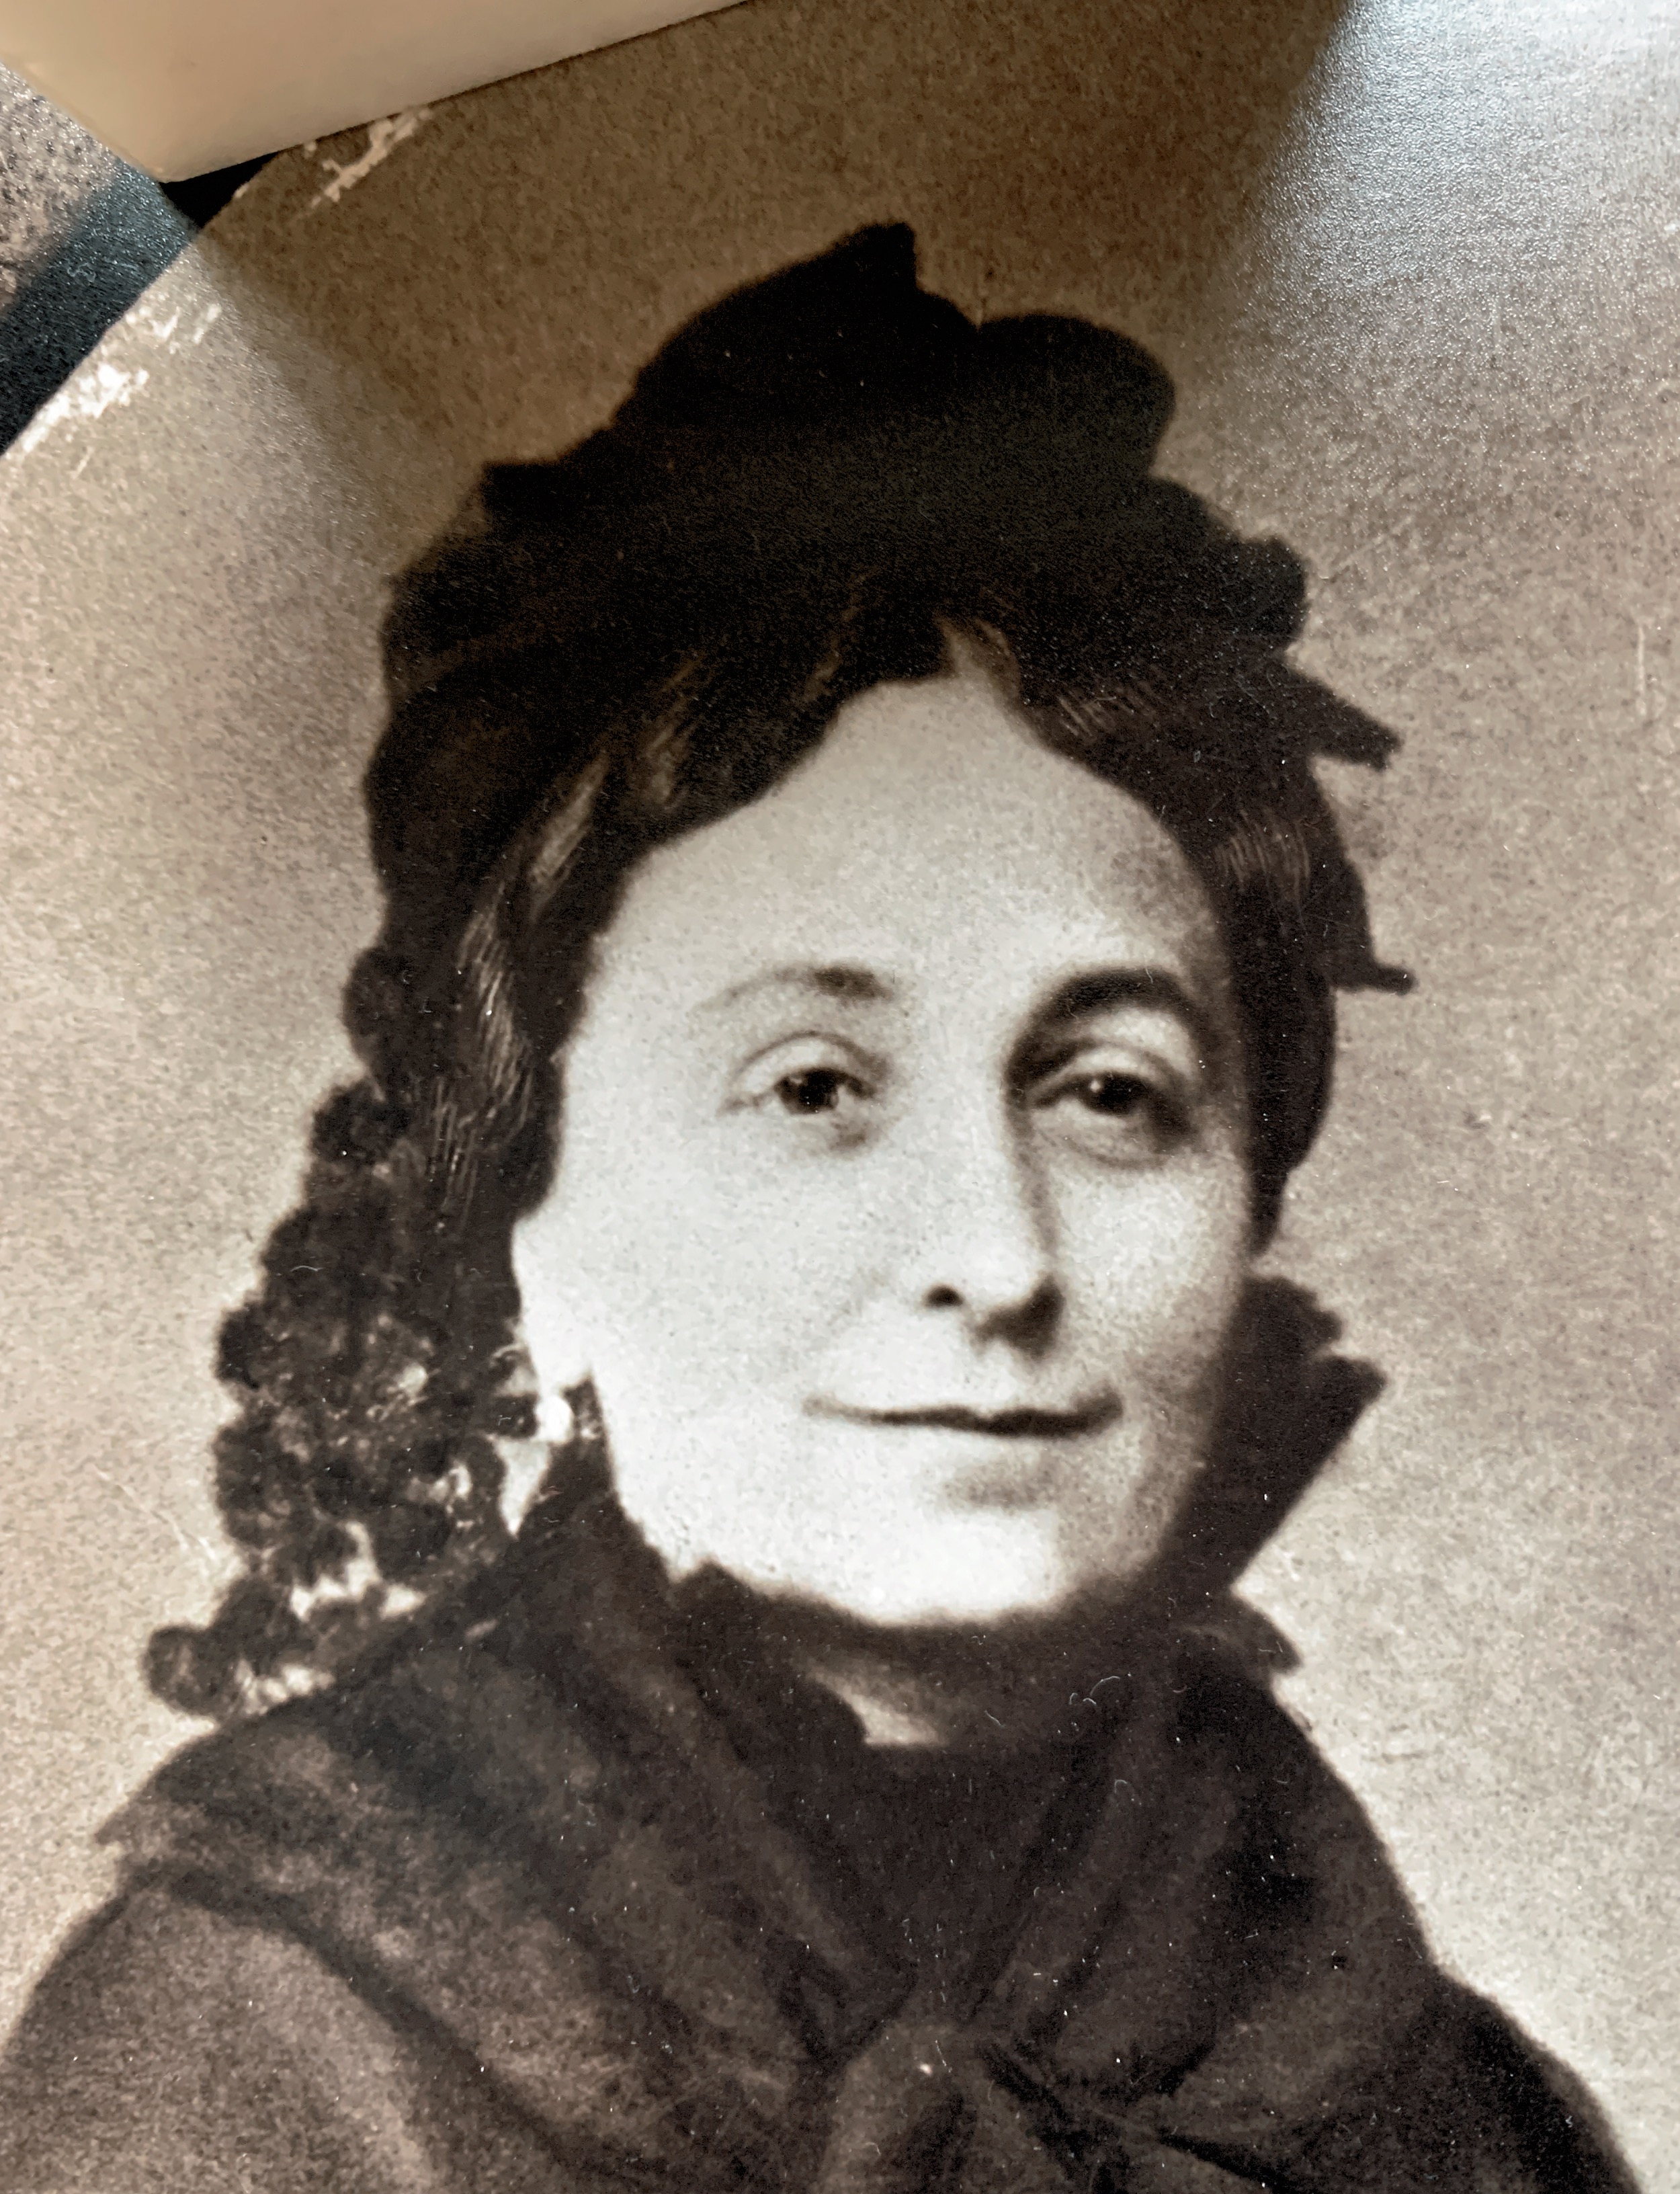 Josèphe Bertrand Tourte, dite Mathilde, épouse de Louis Marchant.
La photo date de 1888 environ 
Mathilde est morte en 1889.